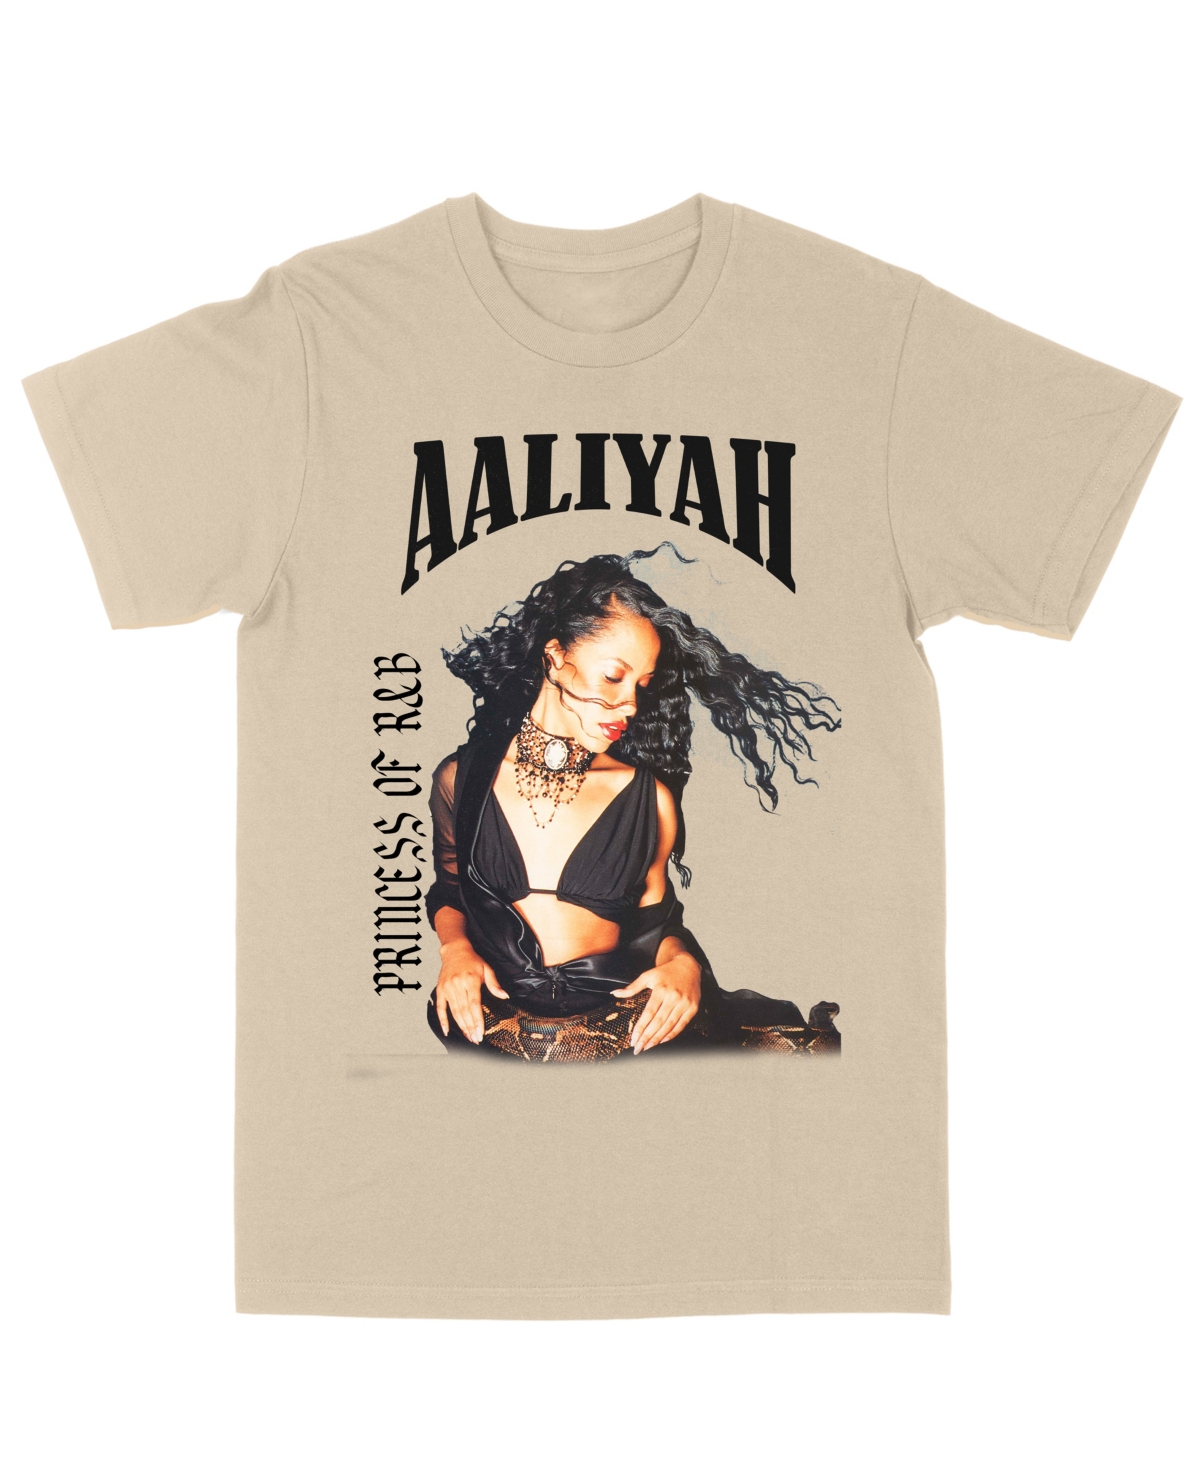 Men's Aaliyah Snake Black Princess of R&B T-shirt - Sand